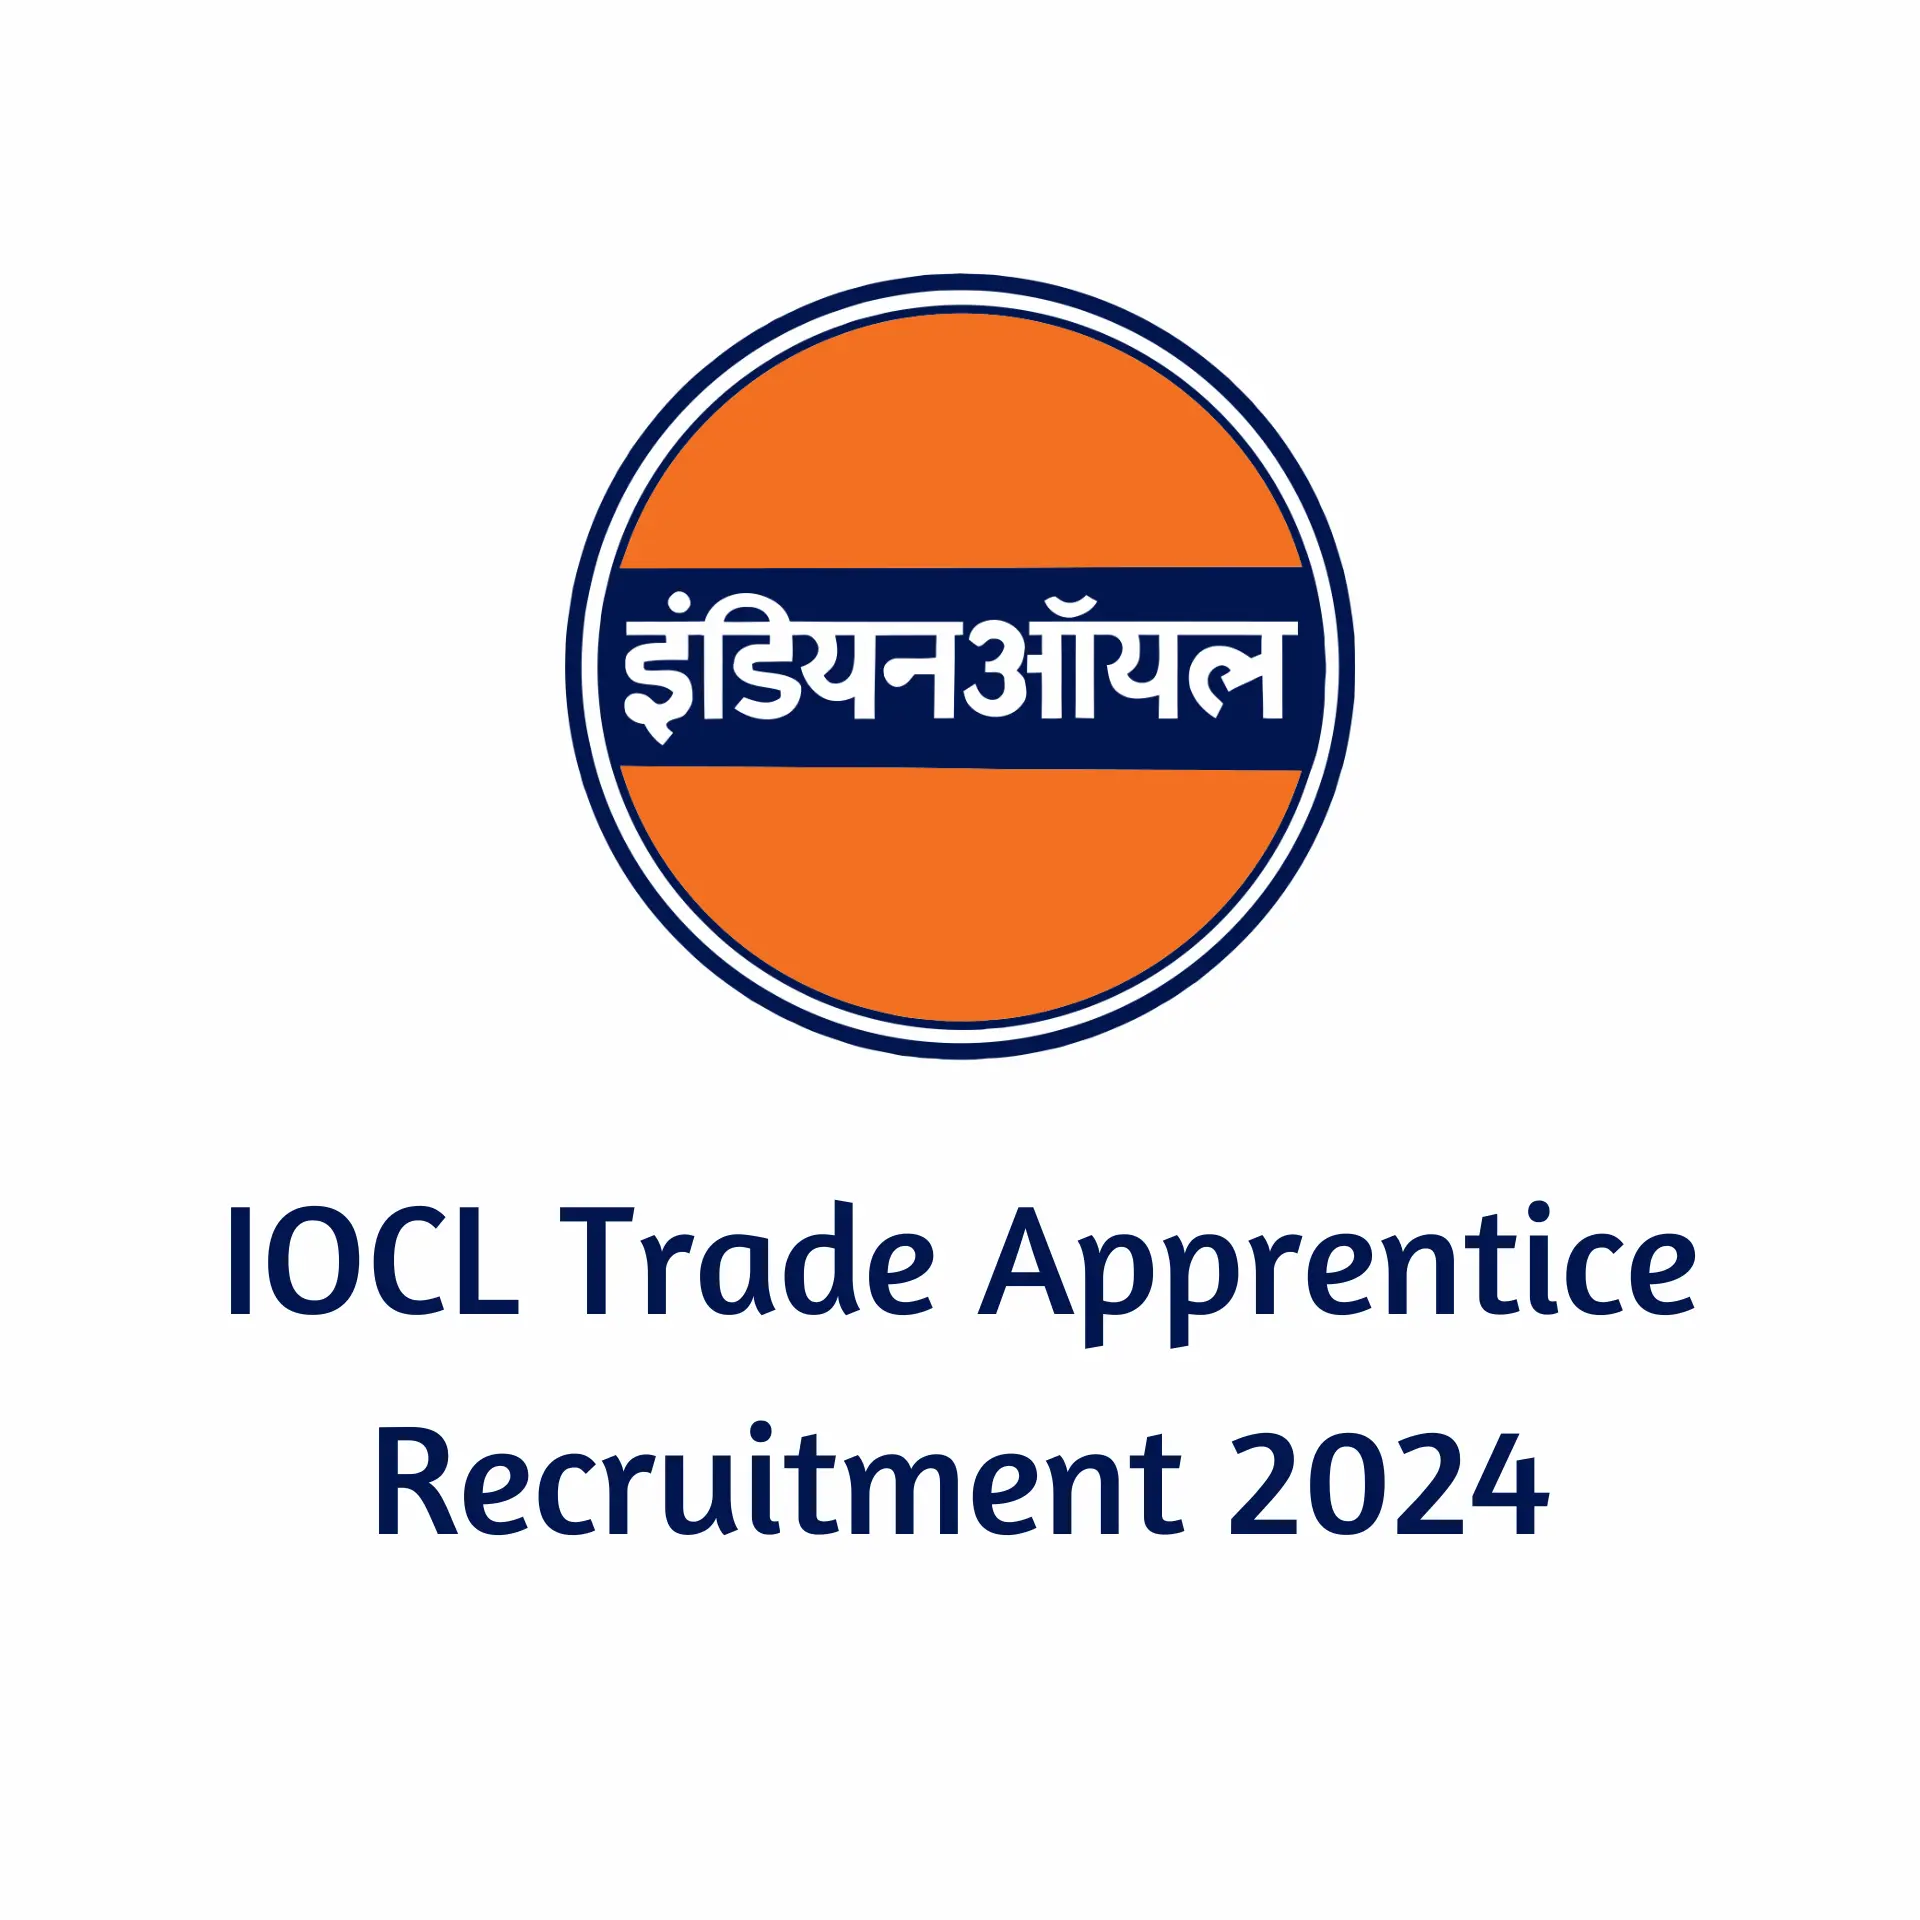 IOCL Trade Apprentice Recruitment 2024